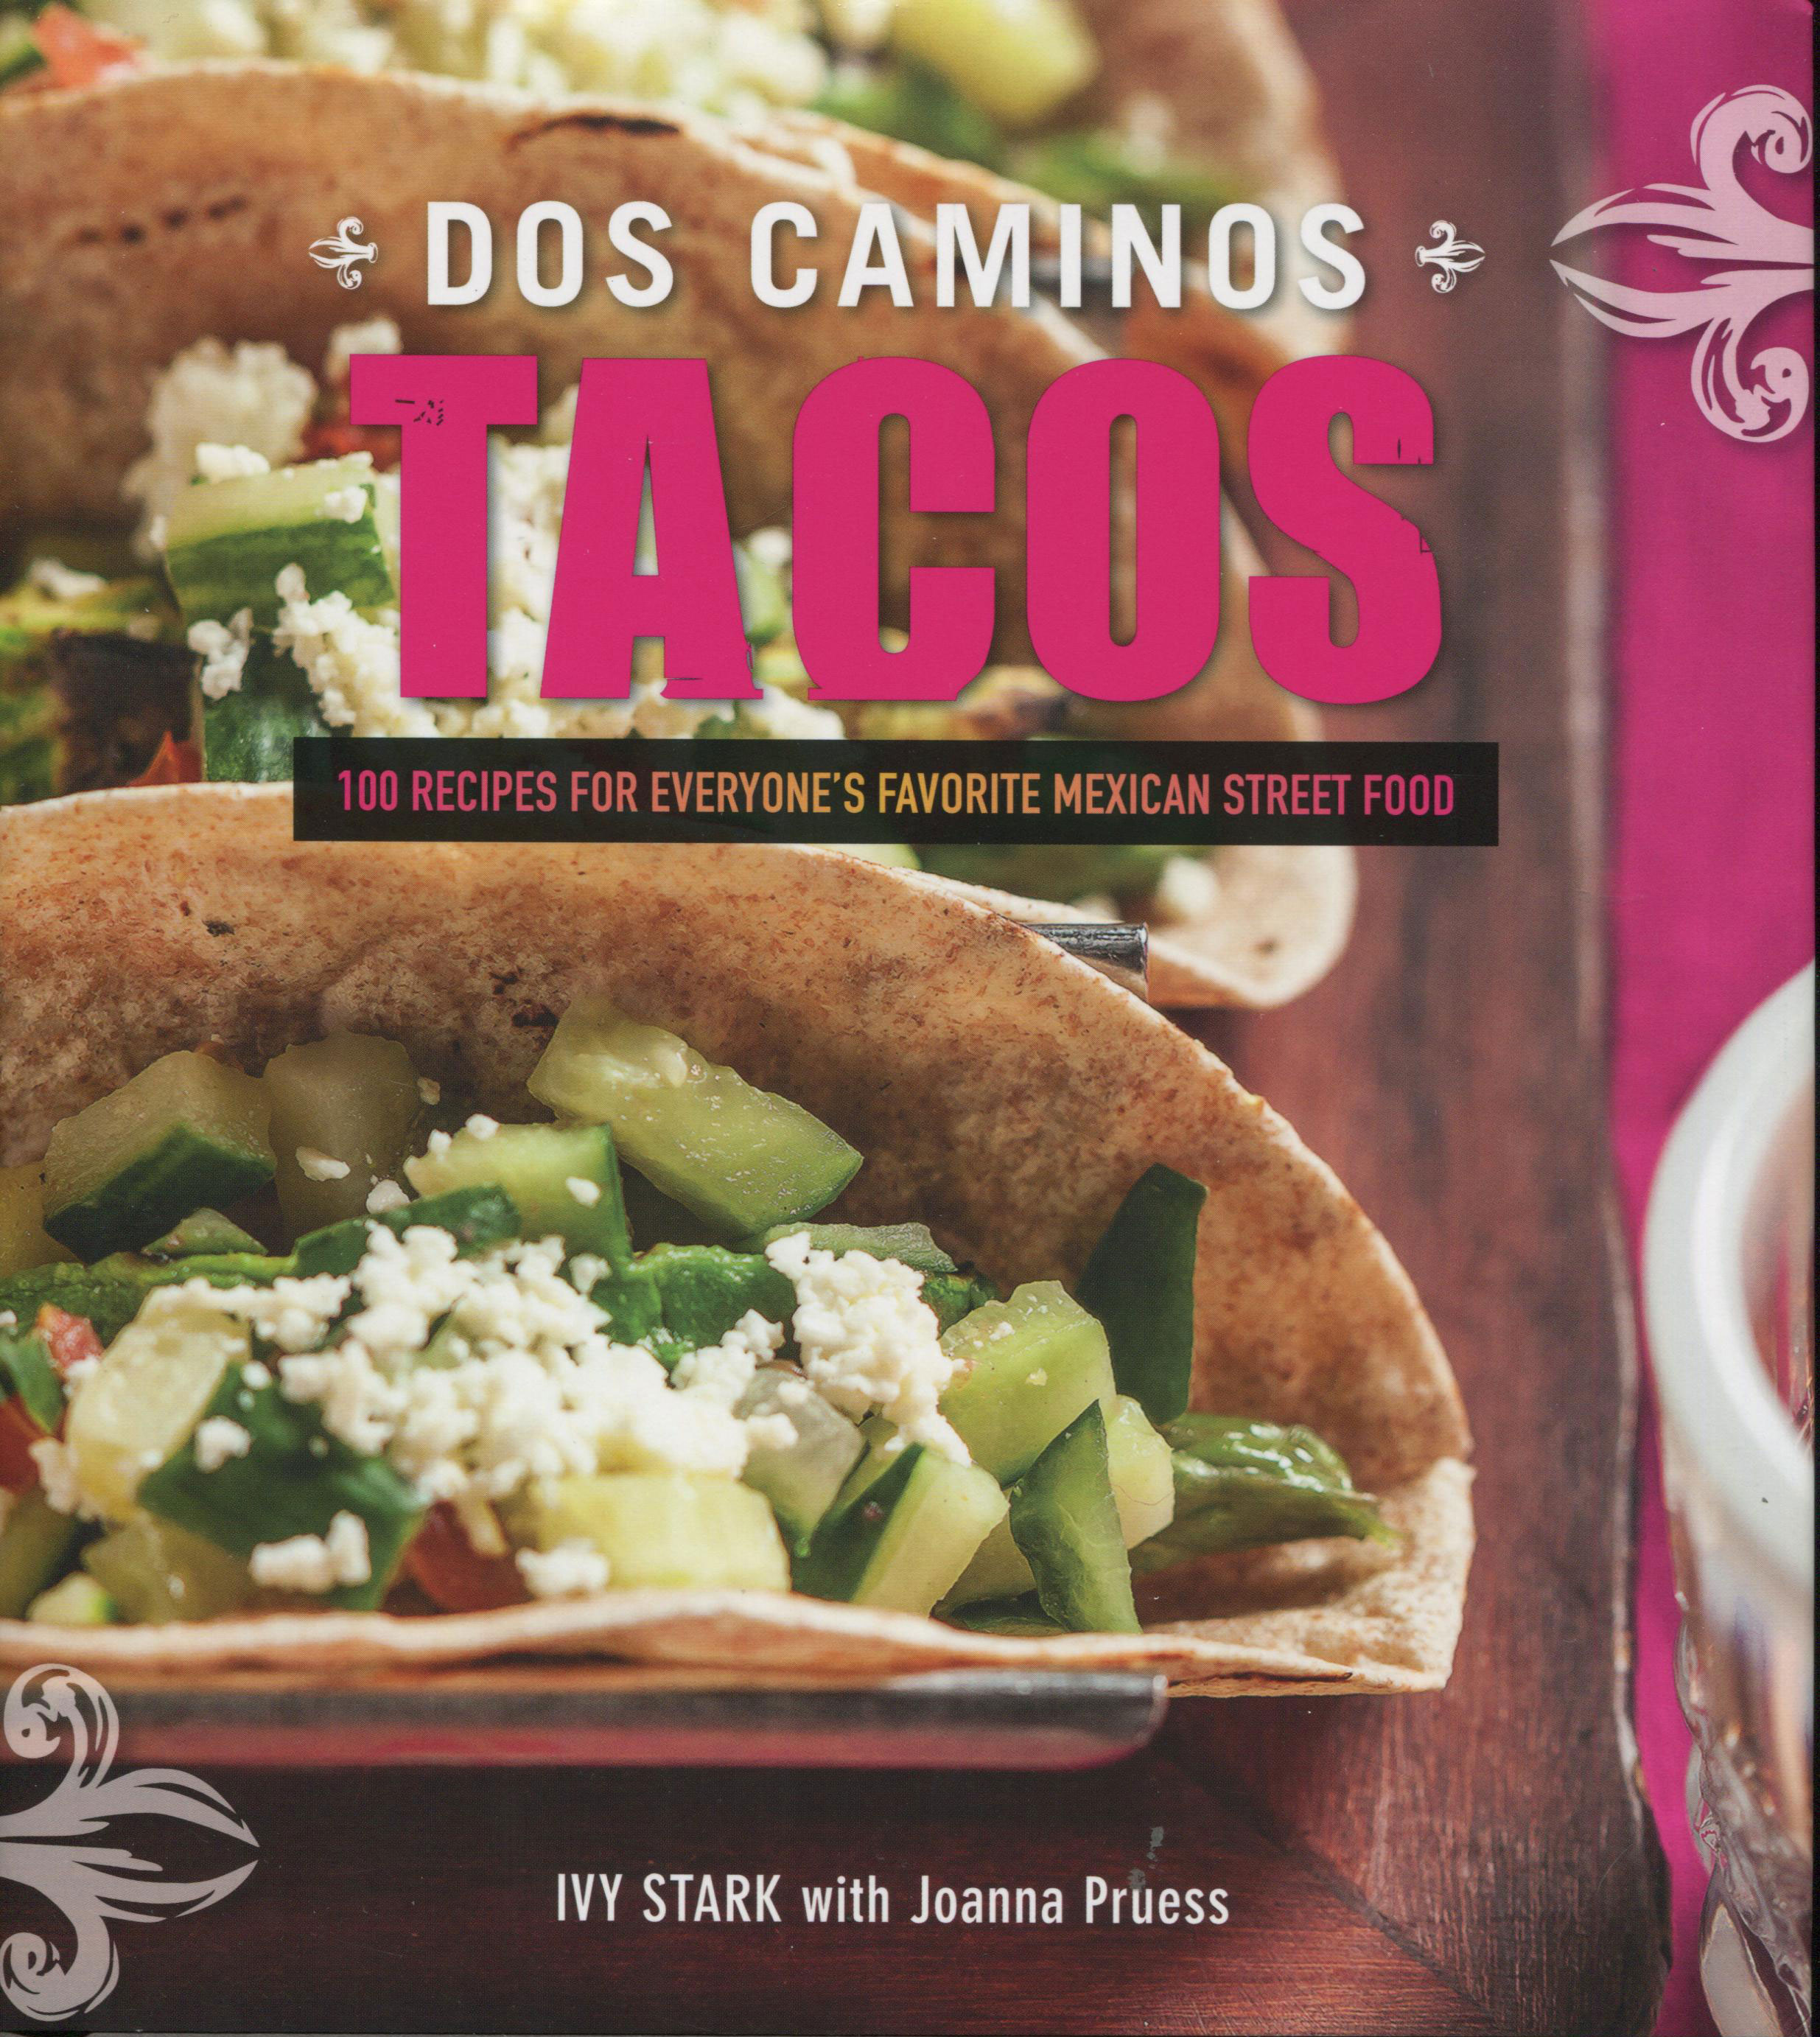 Fiery Cookbook Review: Dos Caminos Tacos